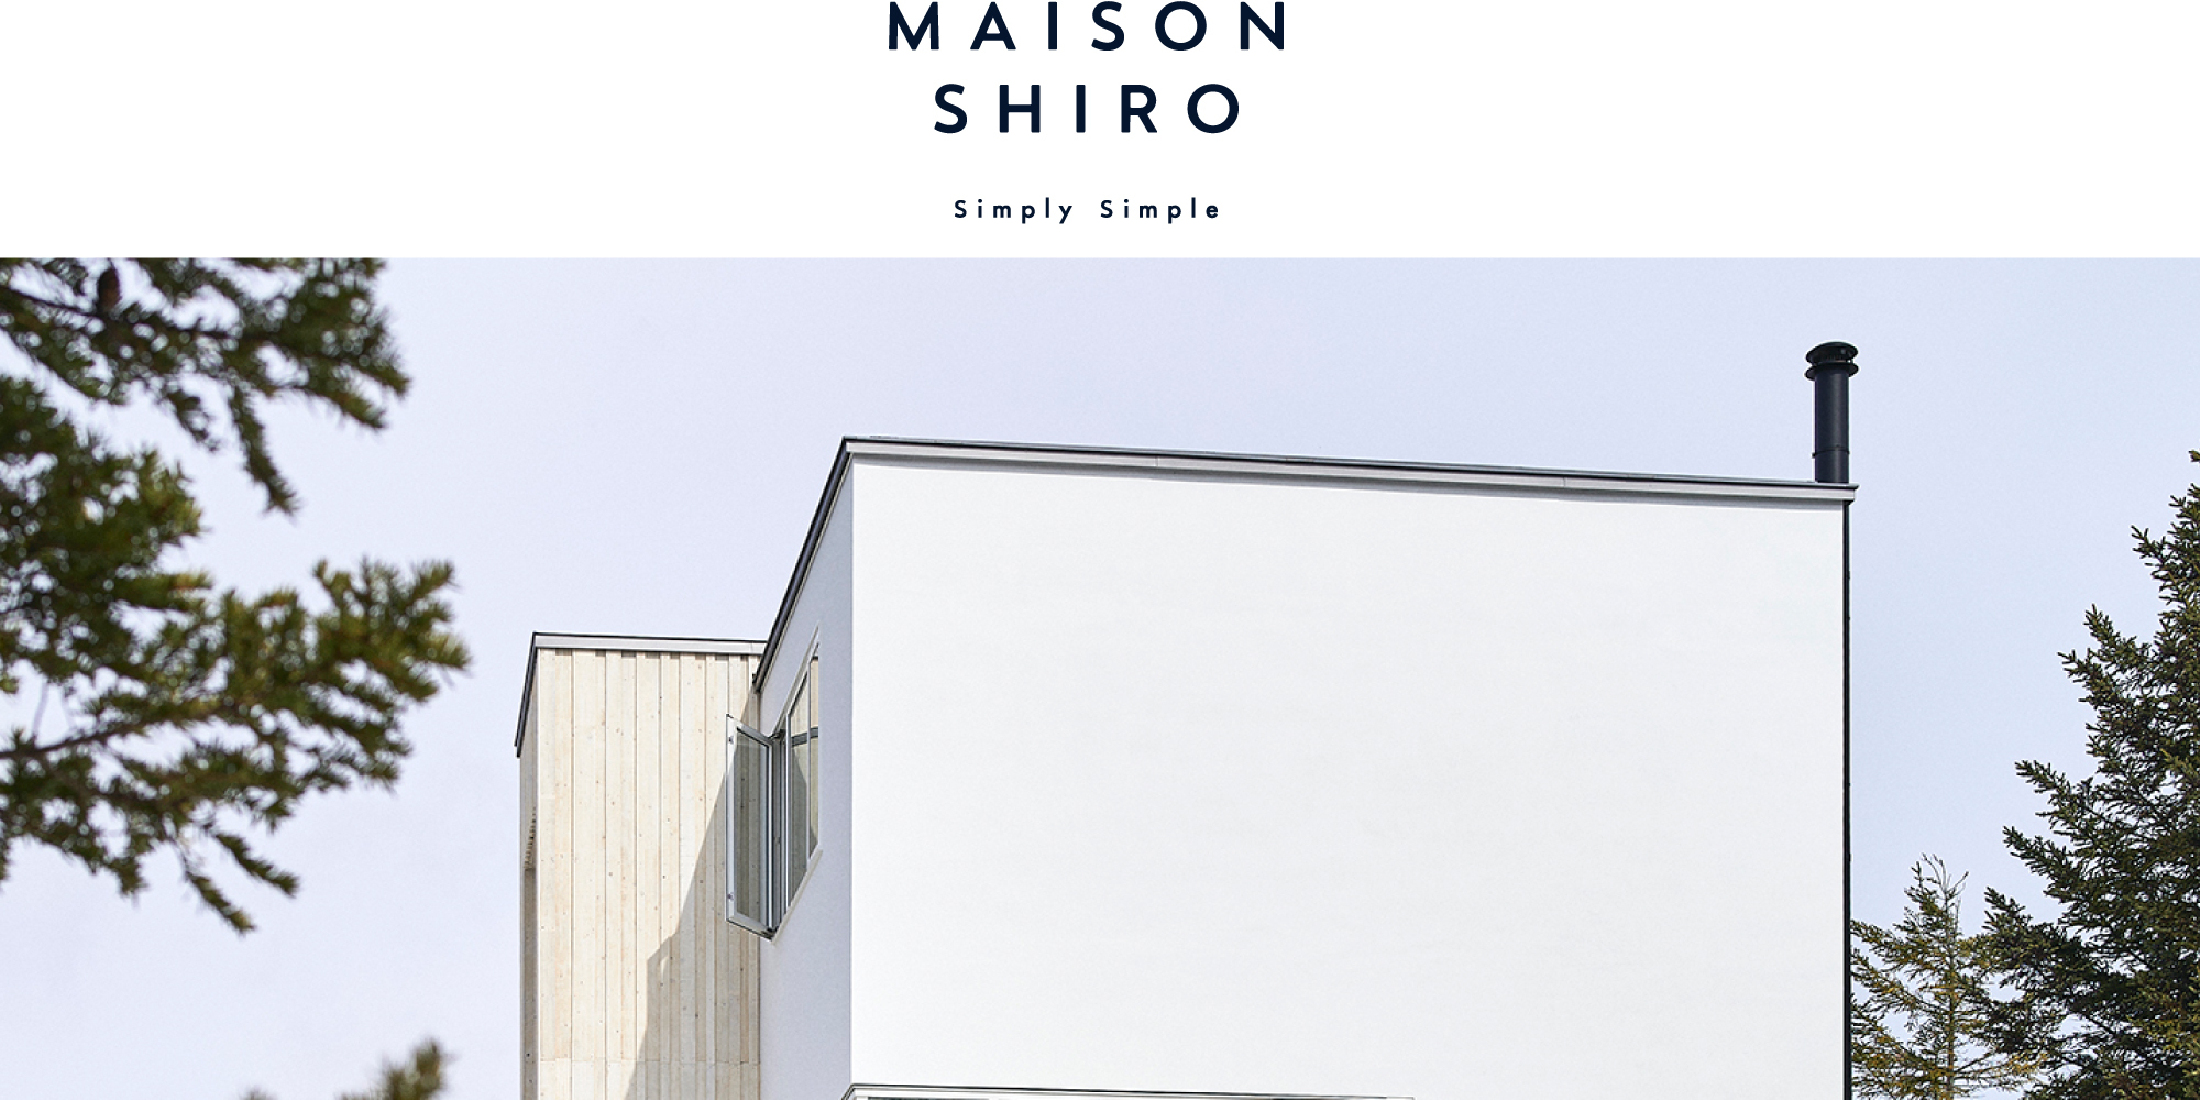 【北海道】コスメティックブランド「SHIRO」の世界観を泊まって体感できる施設「MAISON SHIRO」がオープン！